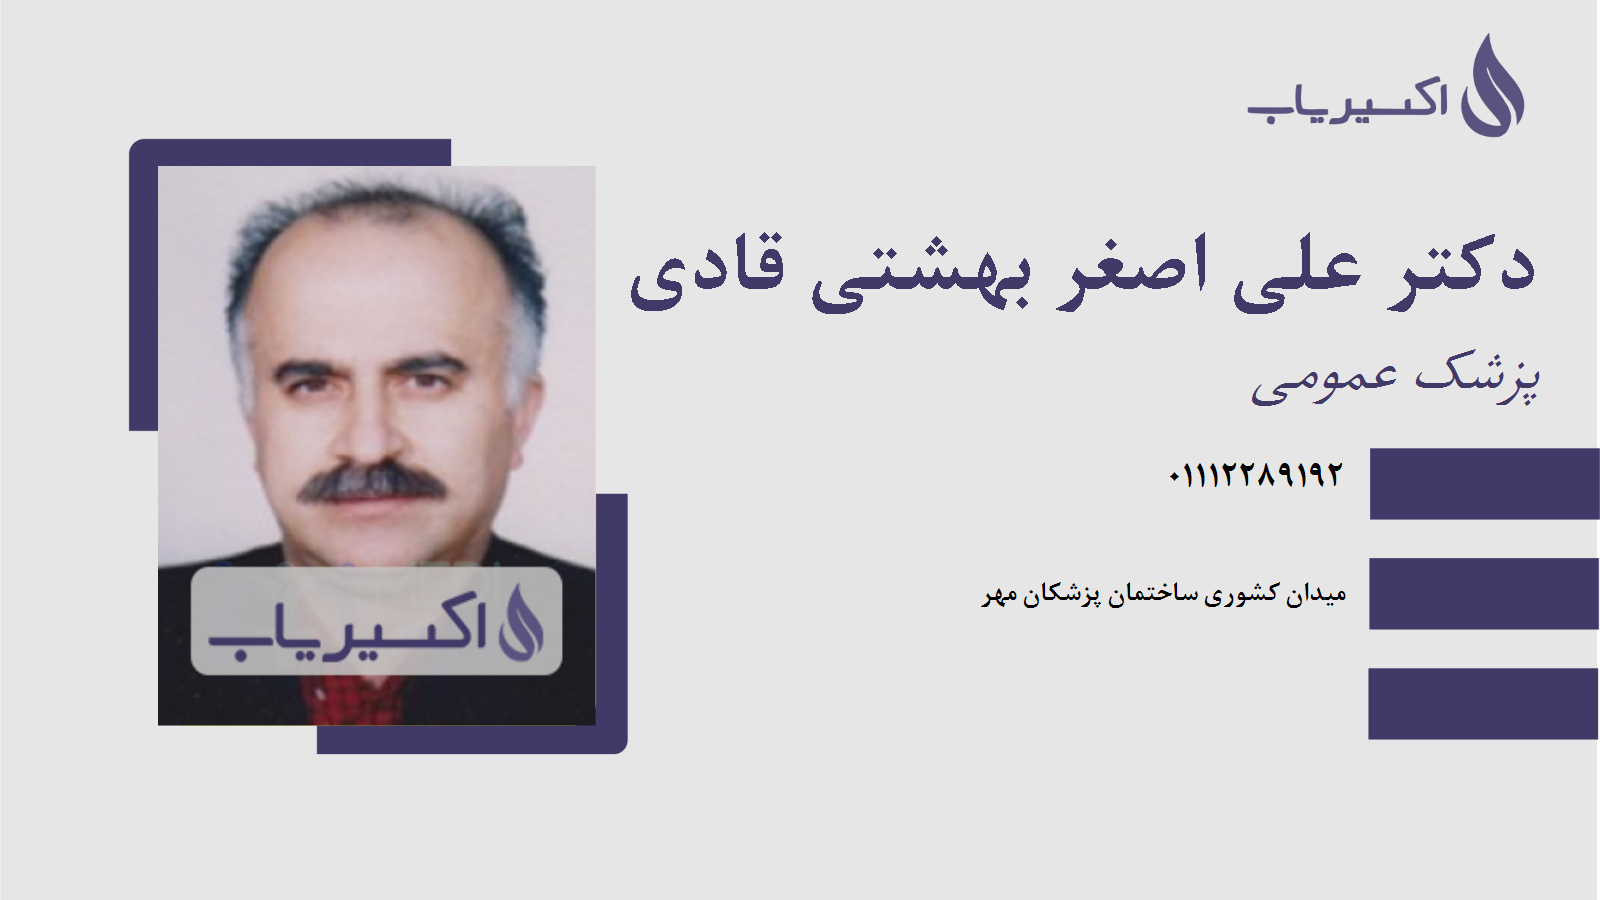 مطب دکتر علی اصغر بهشتی قادی